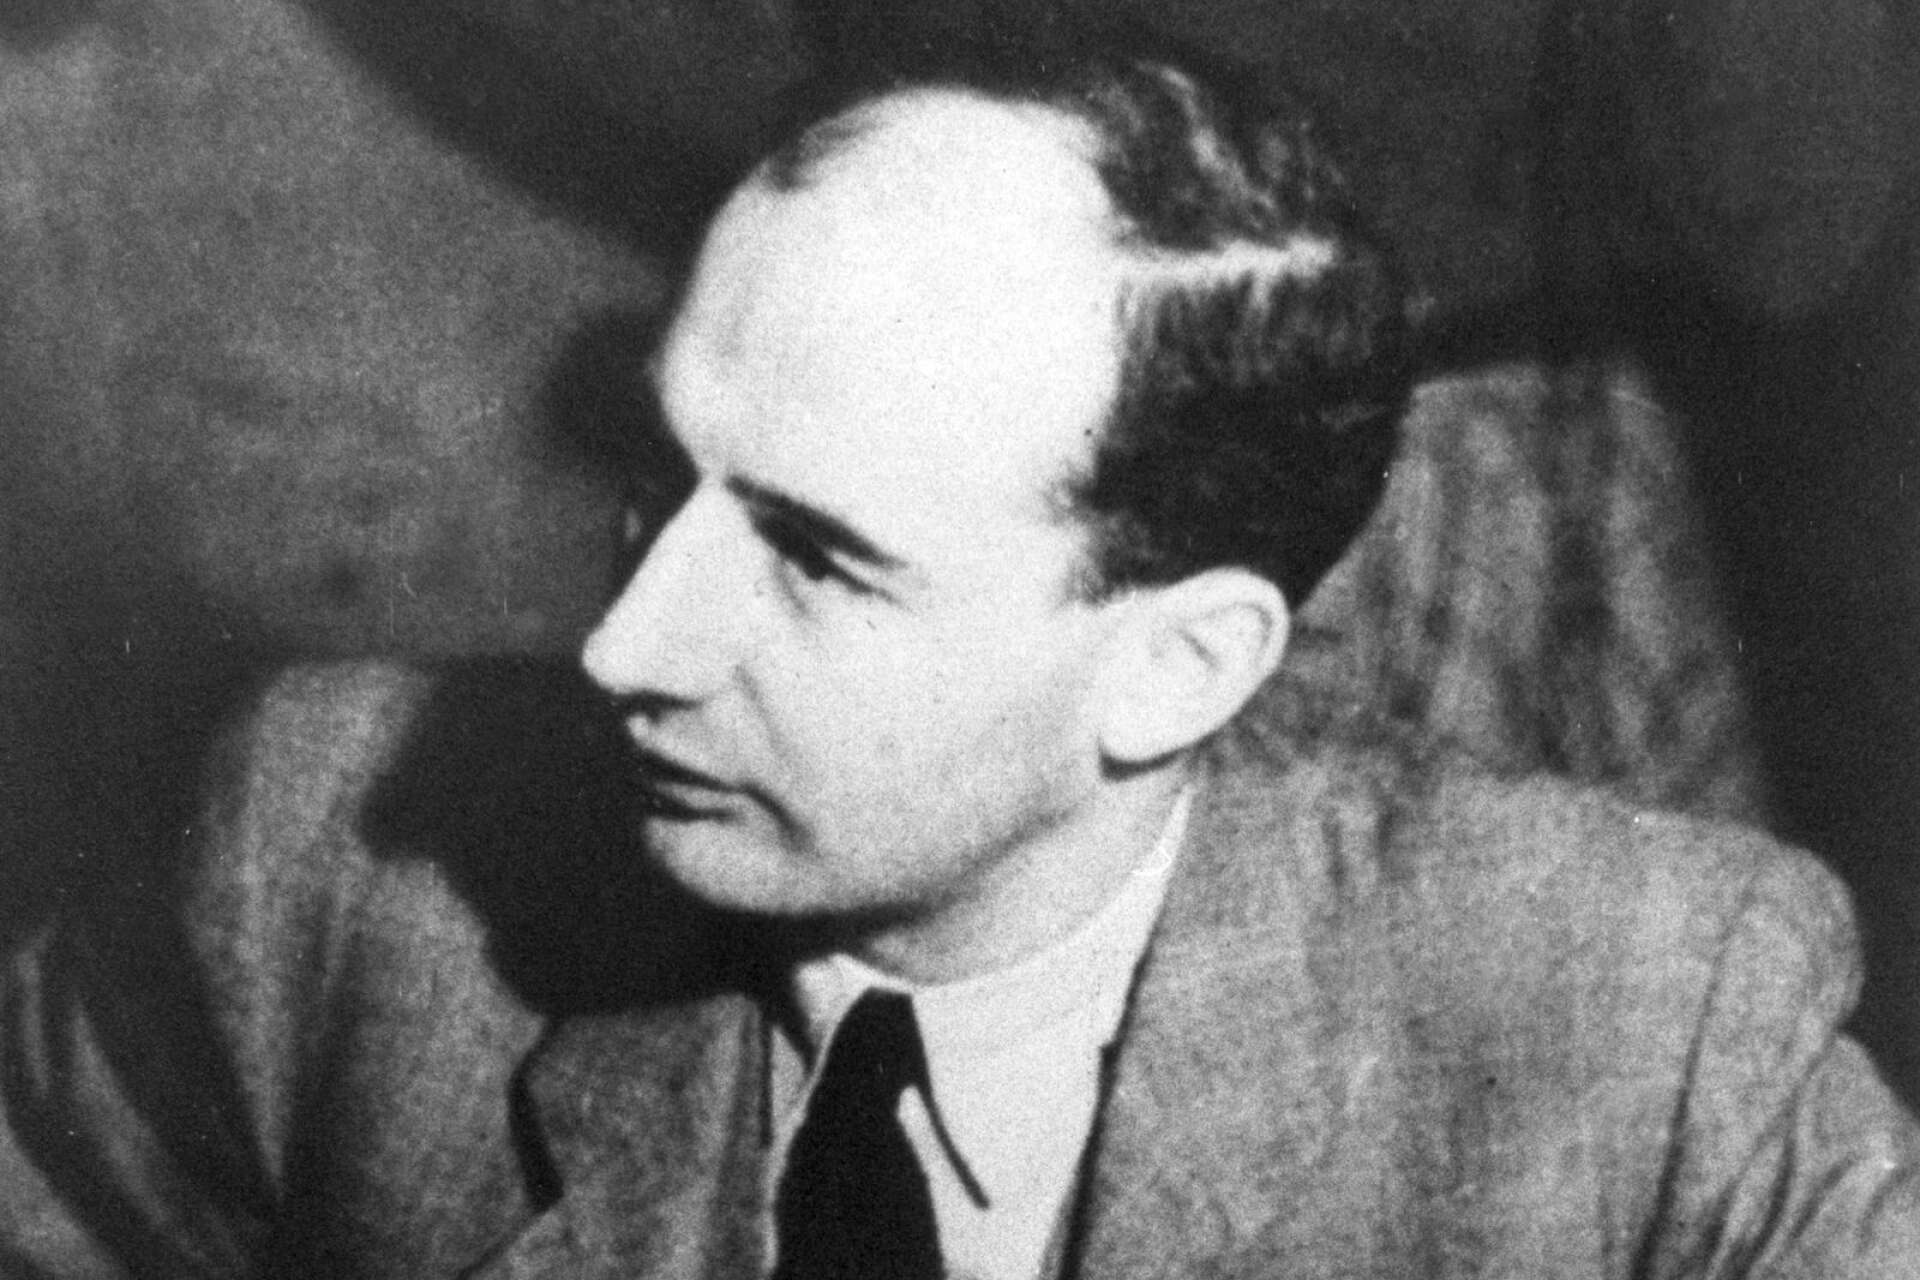 Den 27 augusti firar vi Raoul Wallenberg dag för att påminna oss alla om hur viktigt det är att stå upp för mänskliga rättigheter och respekt för alla – alla! – människor, skriver Lena J Olsson med flera.